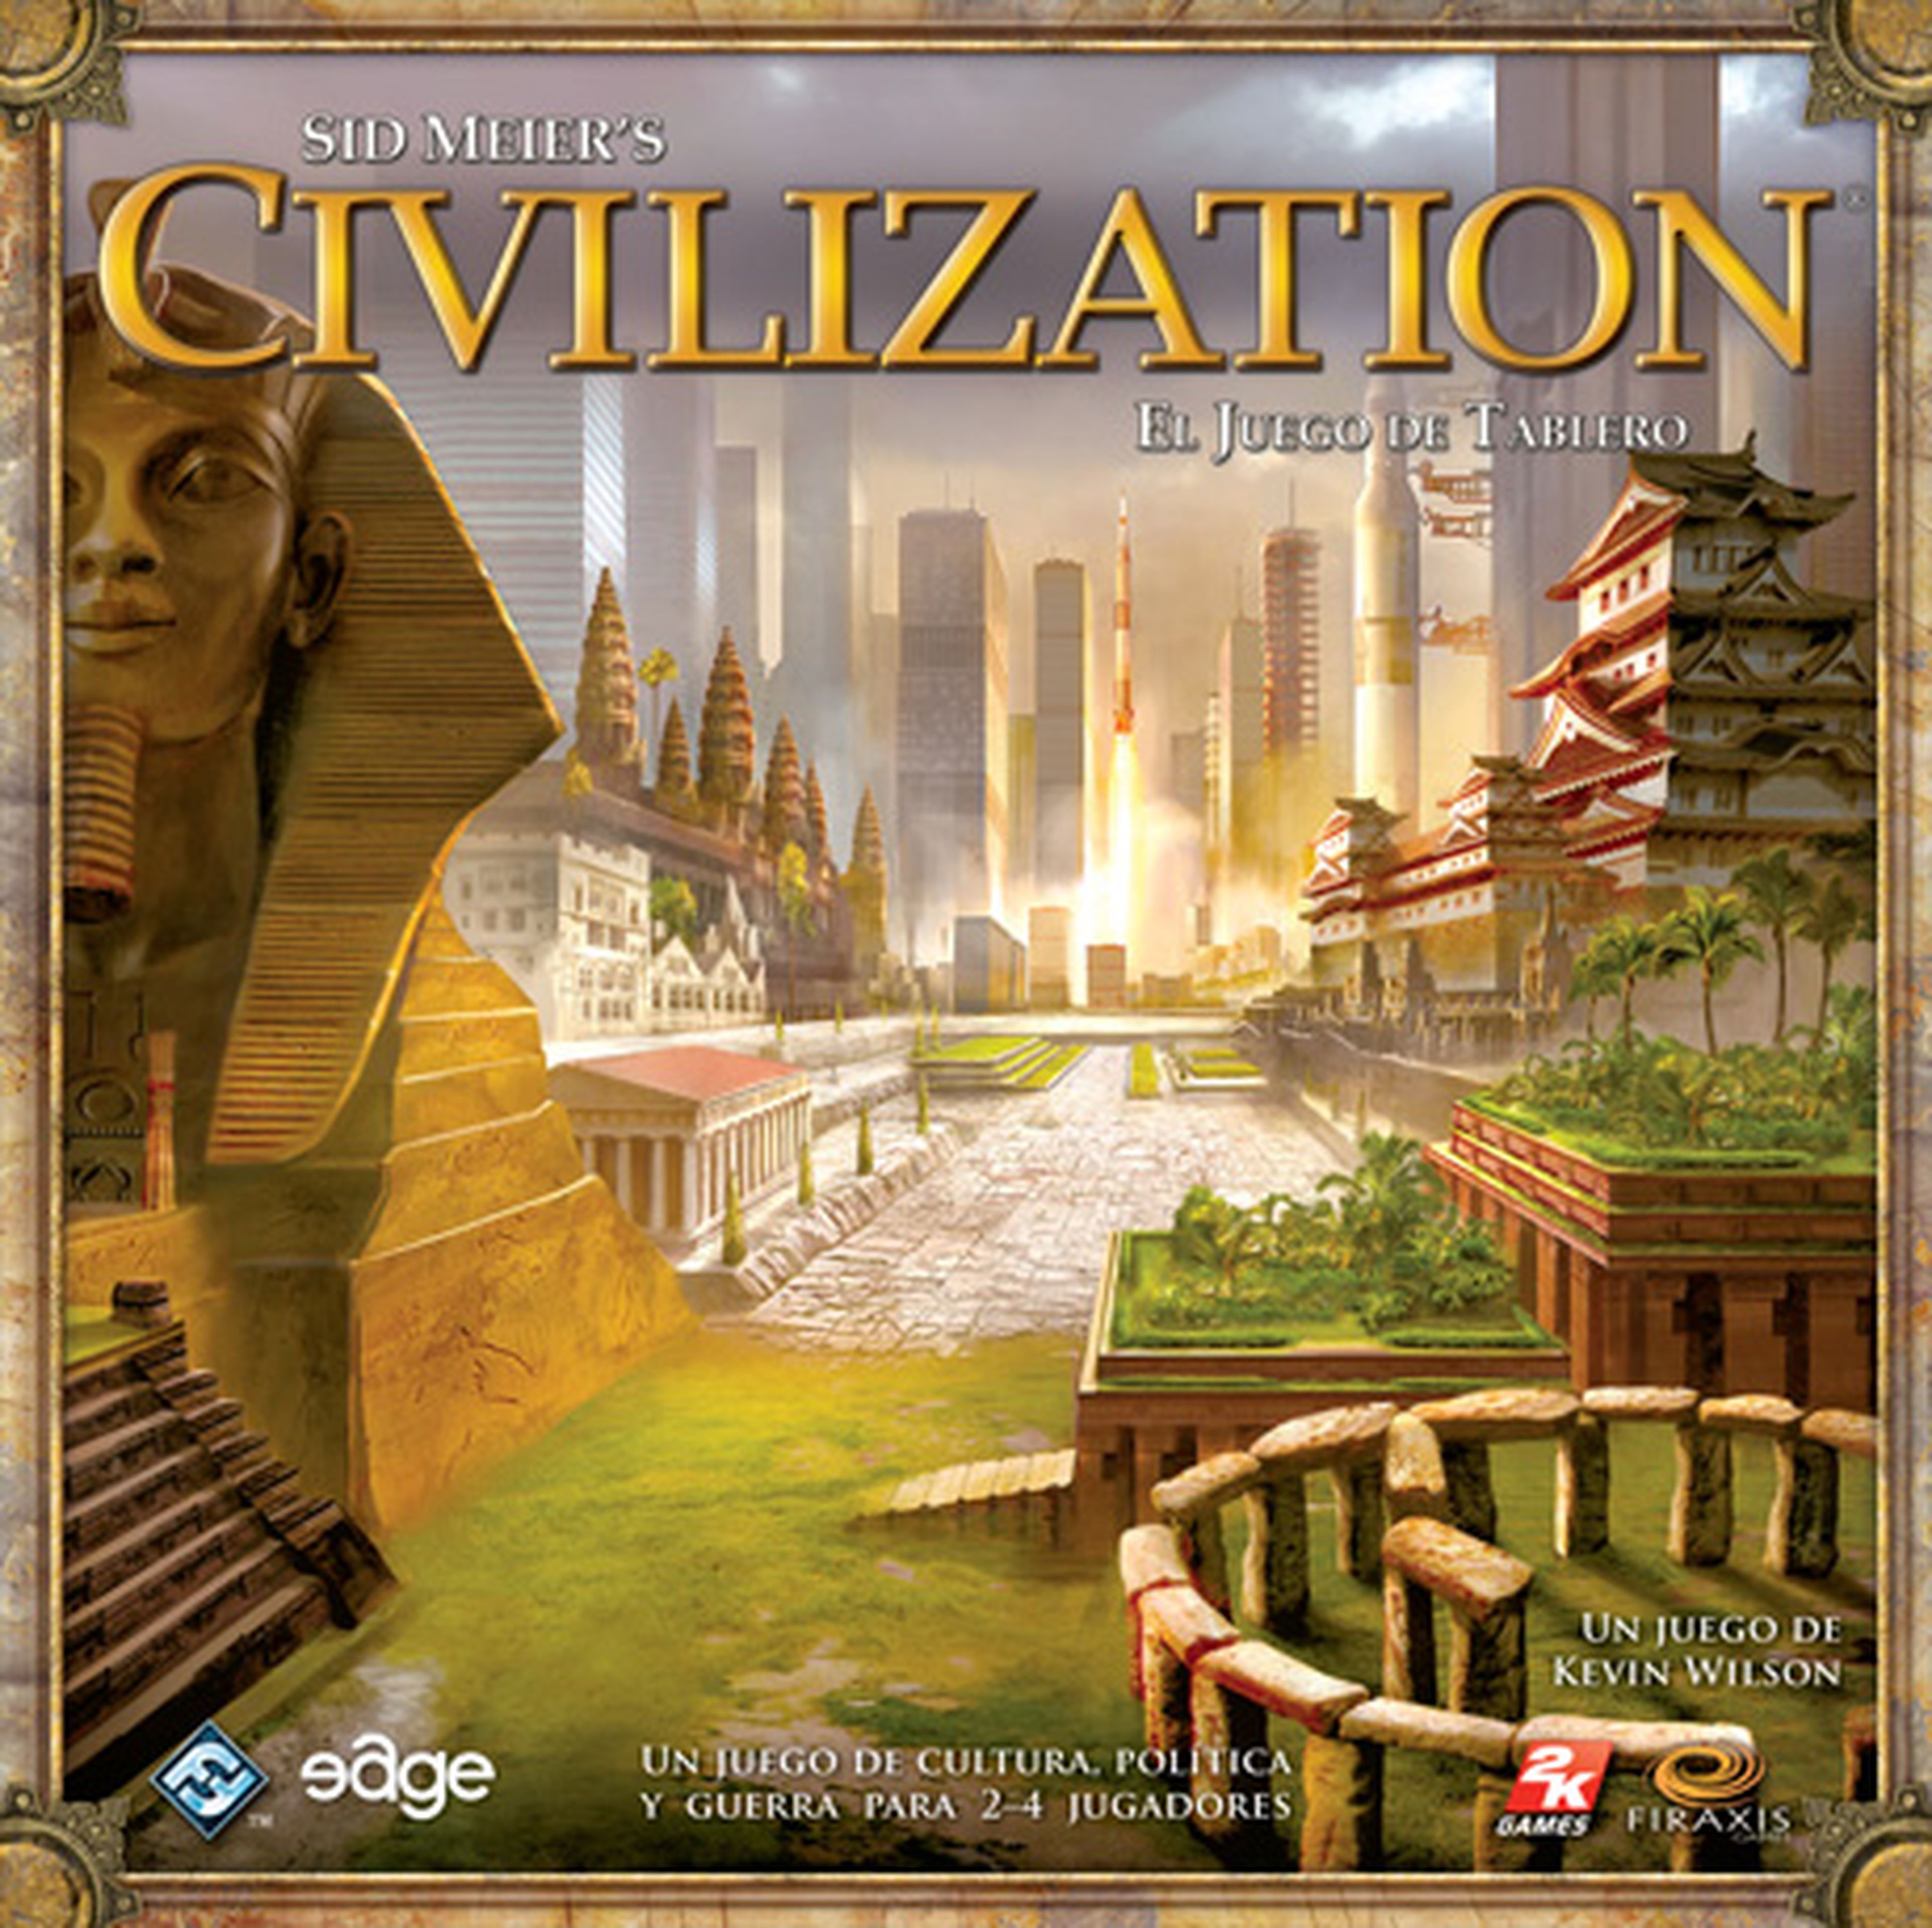 5. Sid Meier's Civilization